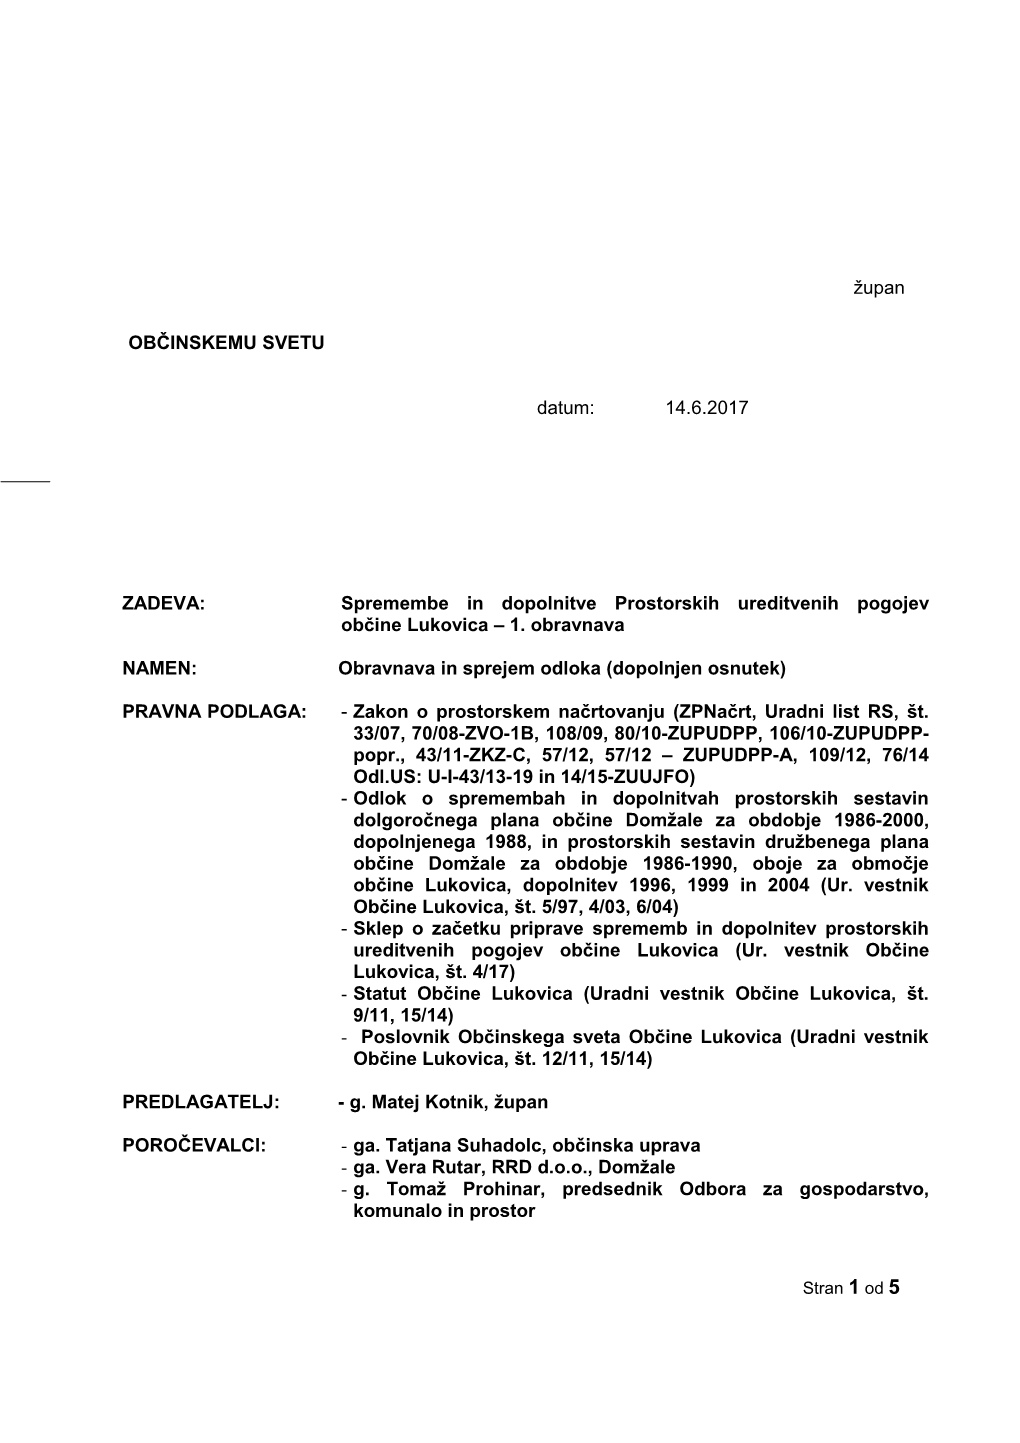 Spremembe in Dopolnitve Prostorskih Ureditvenih Pogojev Občine Lukovica – 1